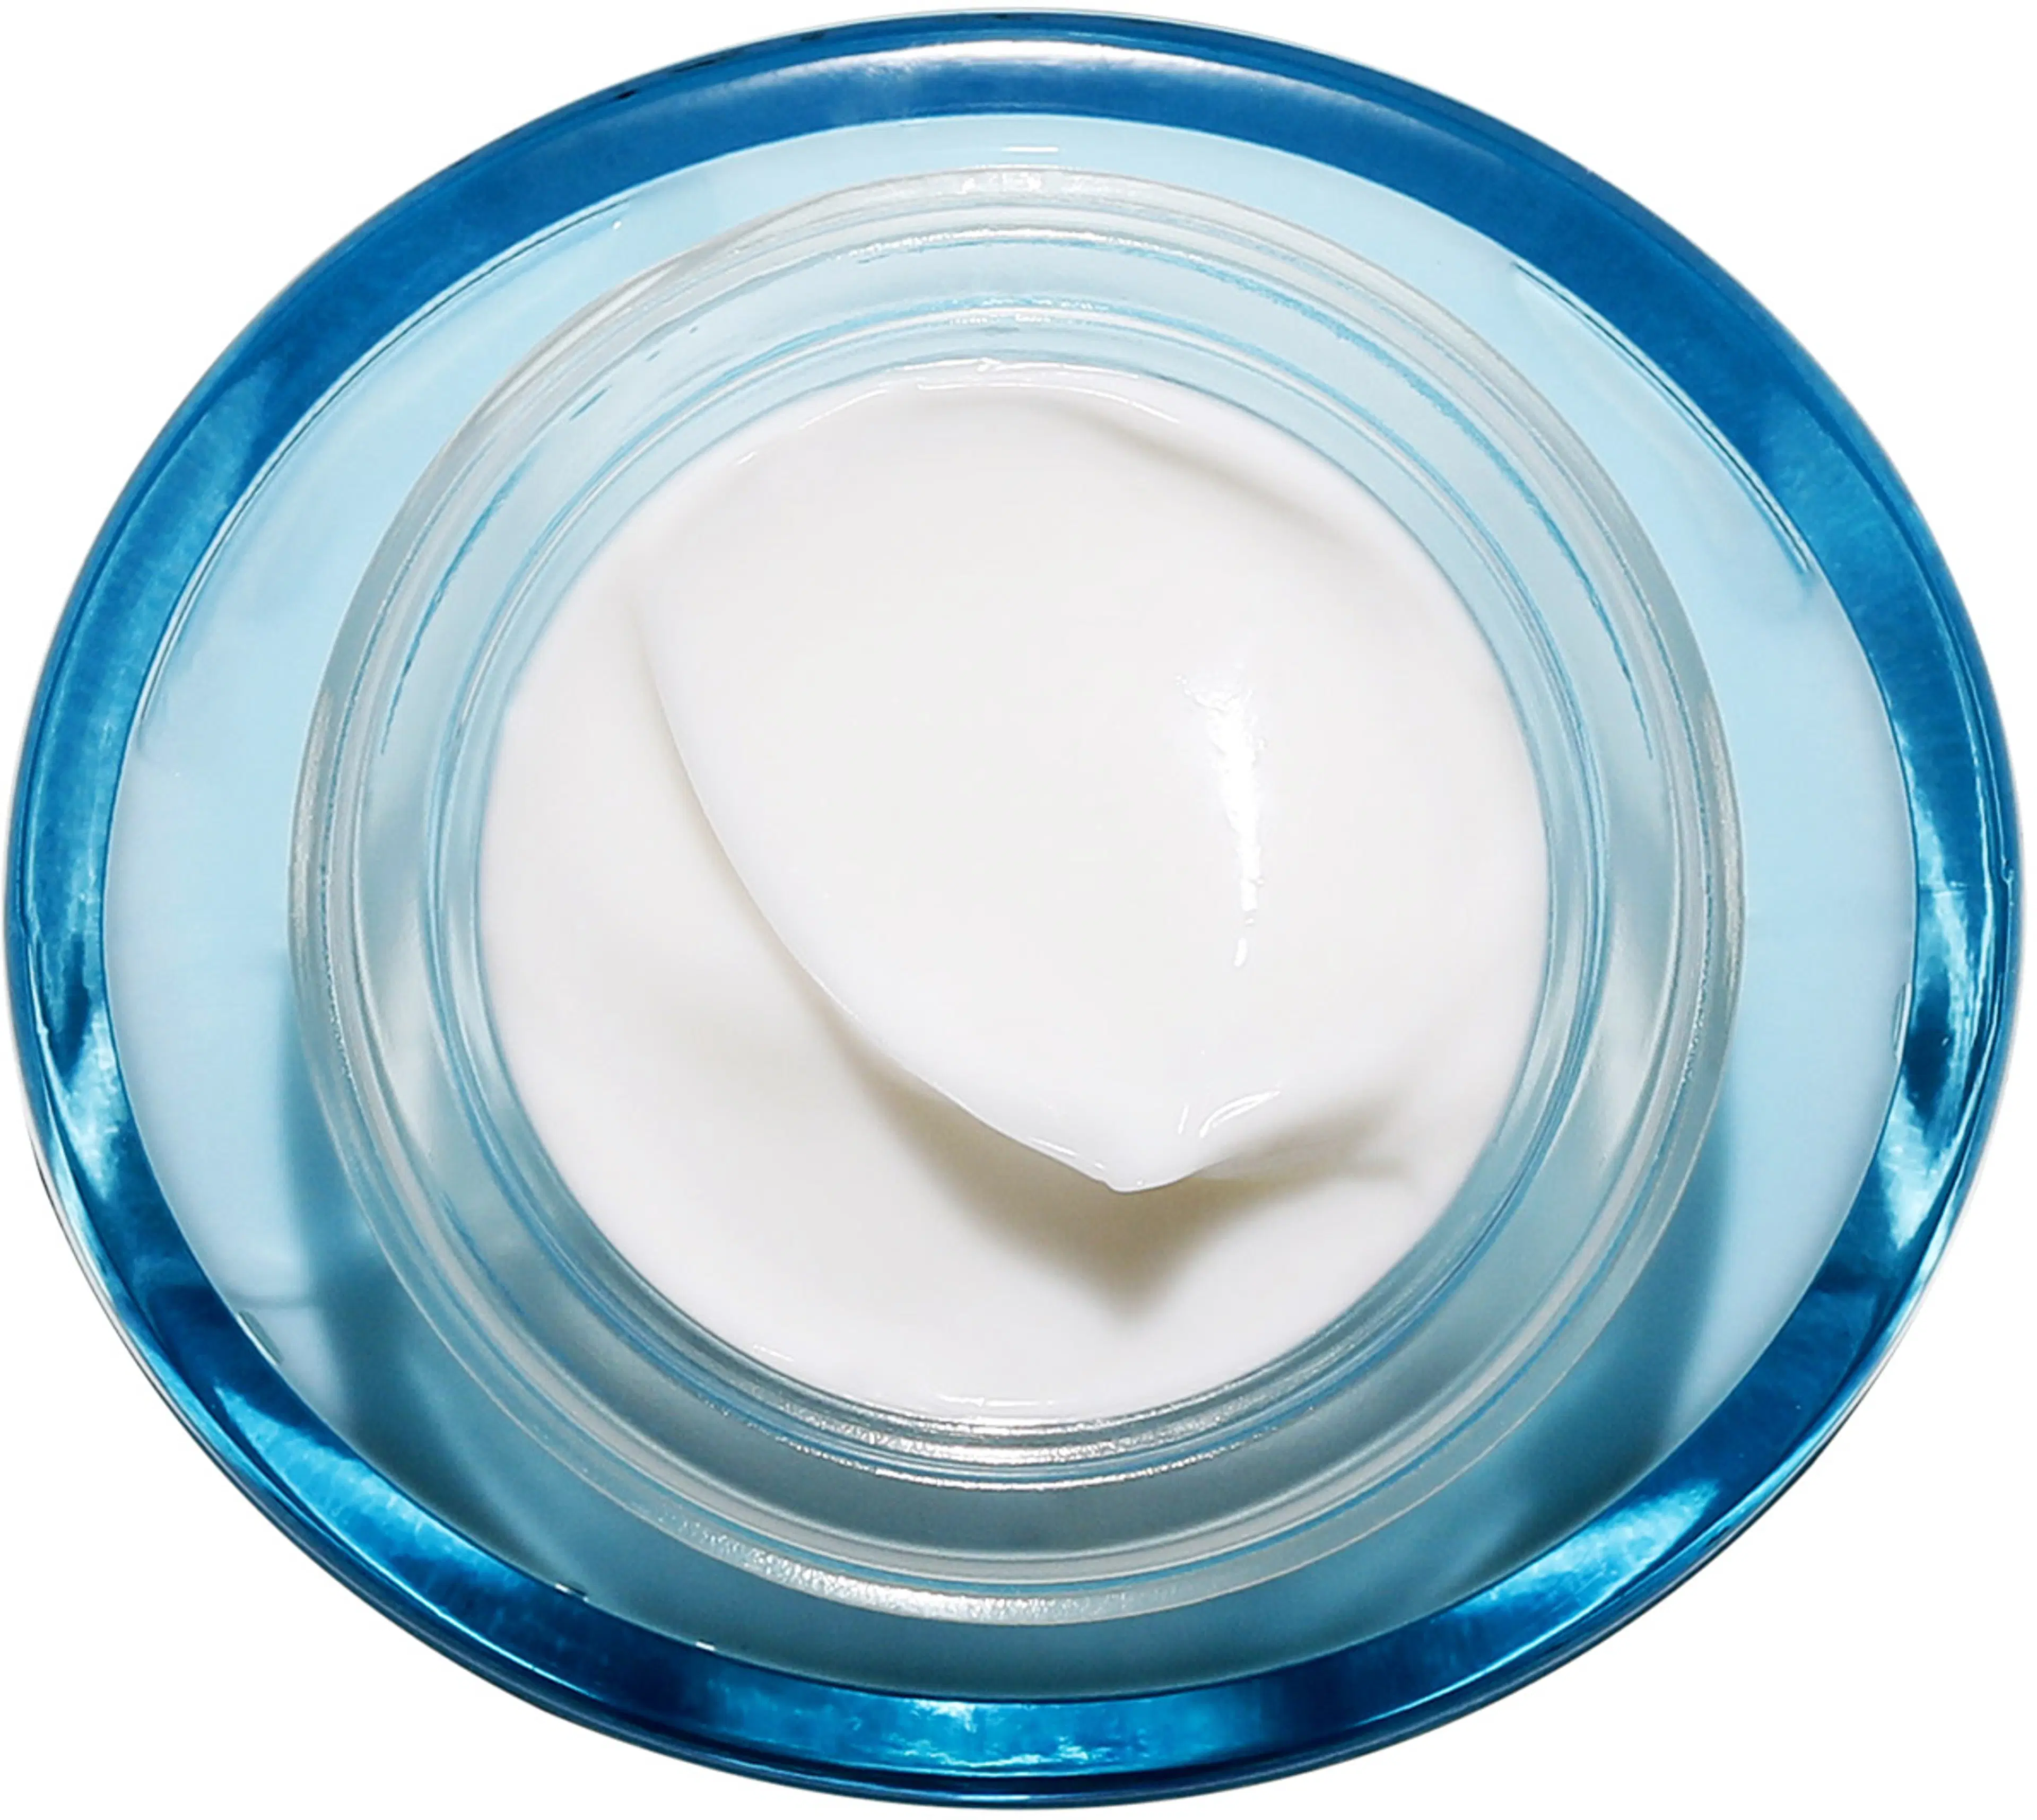 Clarins Hydra-Essentiel [HA²] Silky Cream päivävoide 50 ml